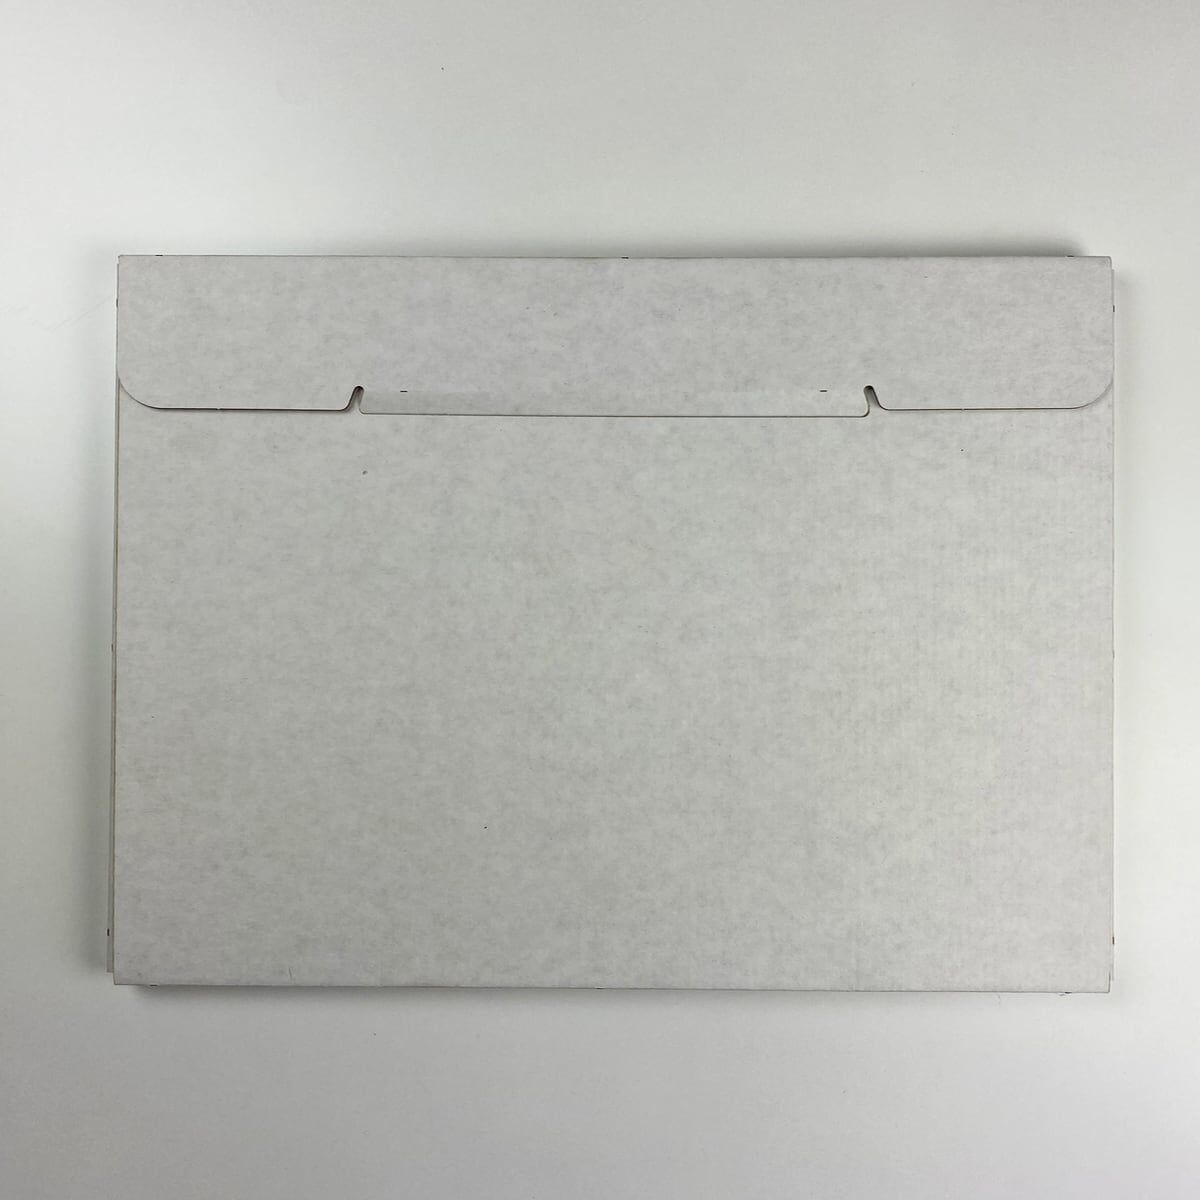 Packaging for A3 calendar (430x310x13)